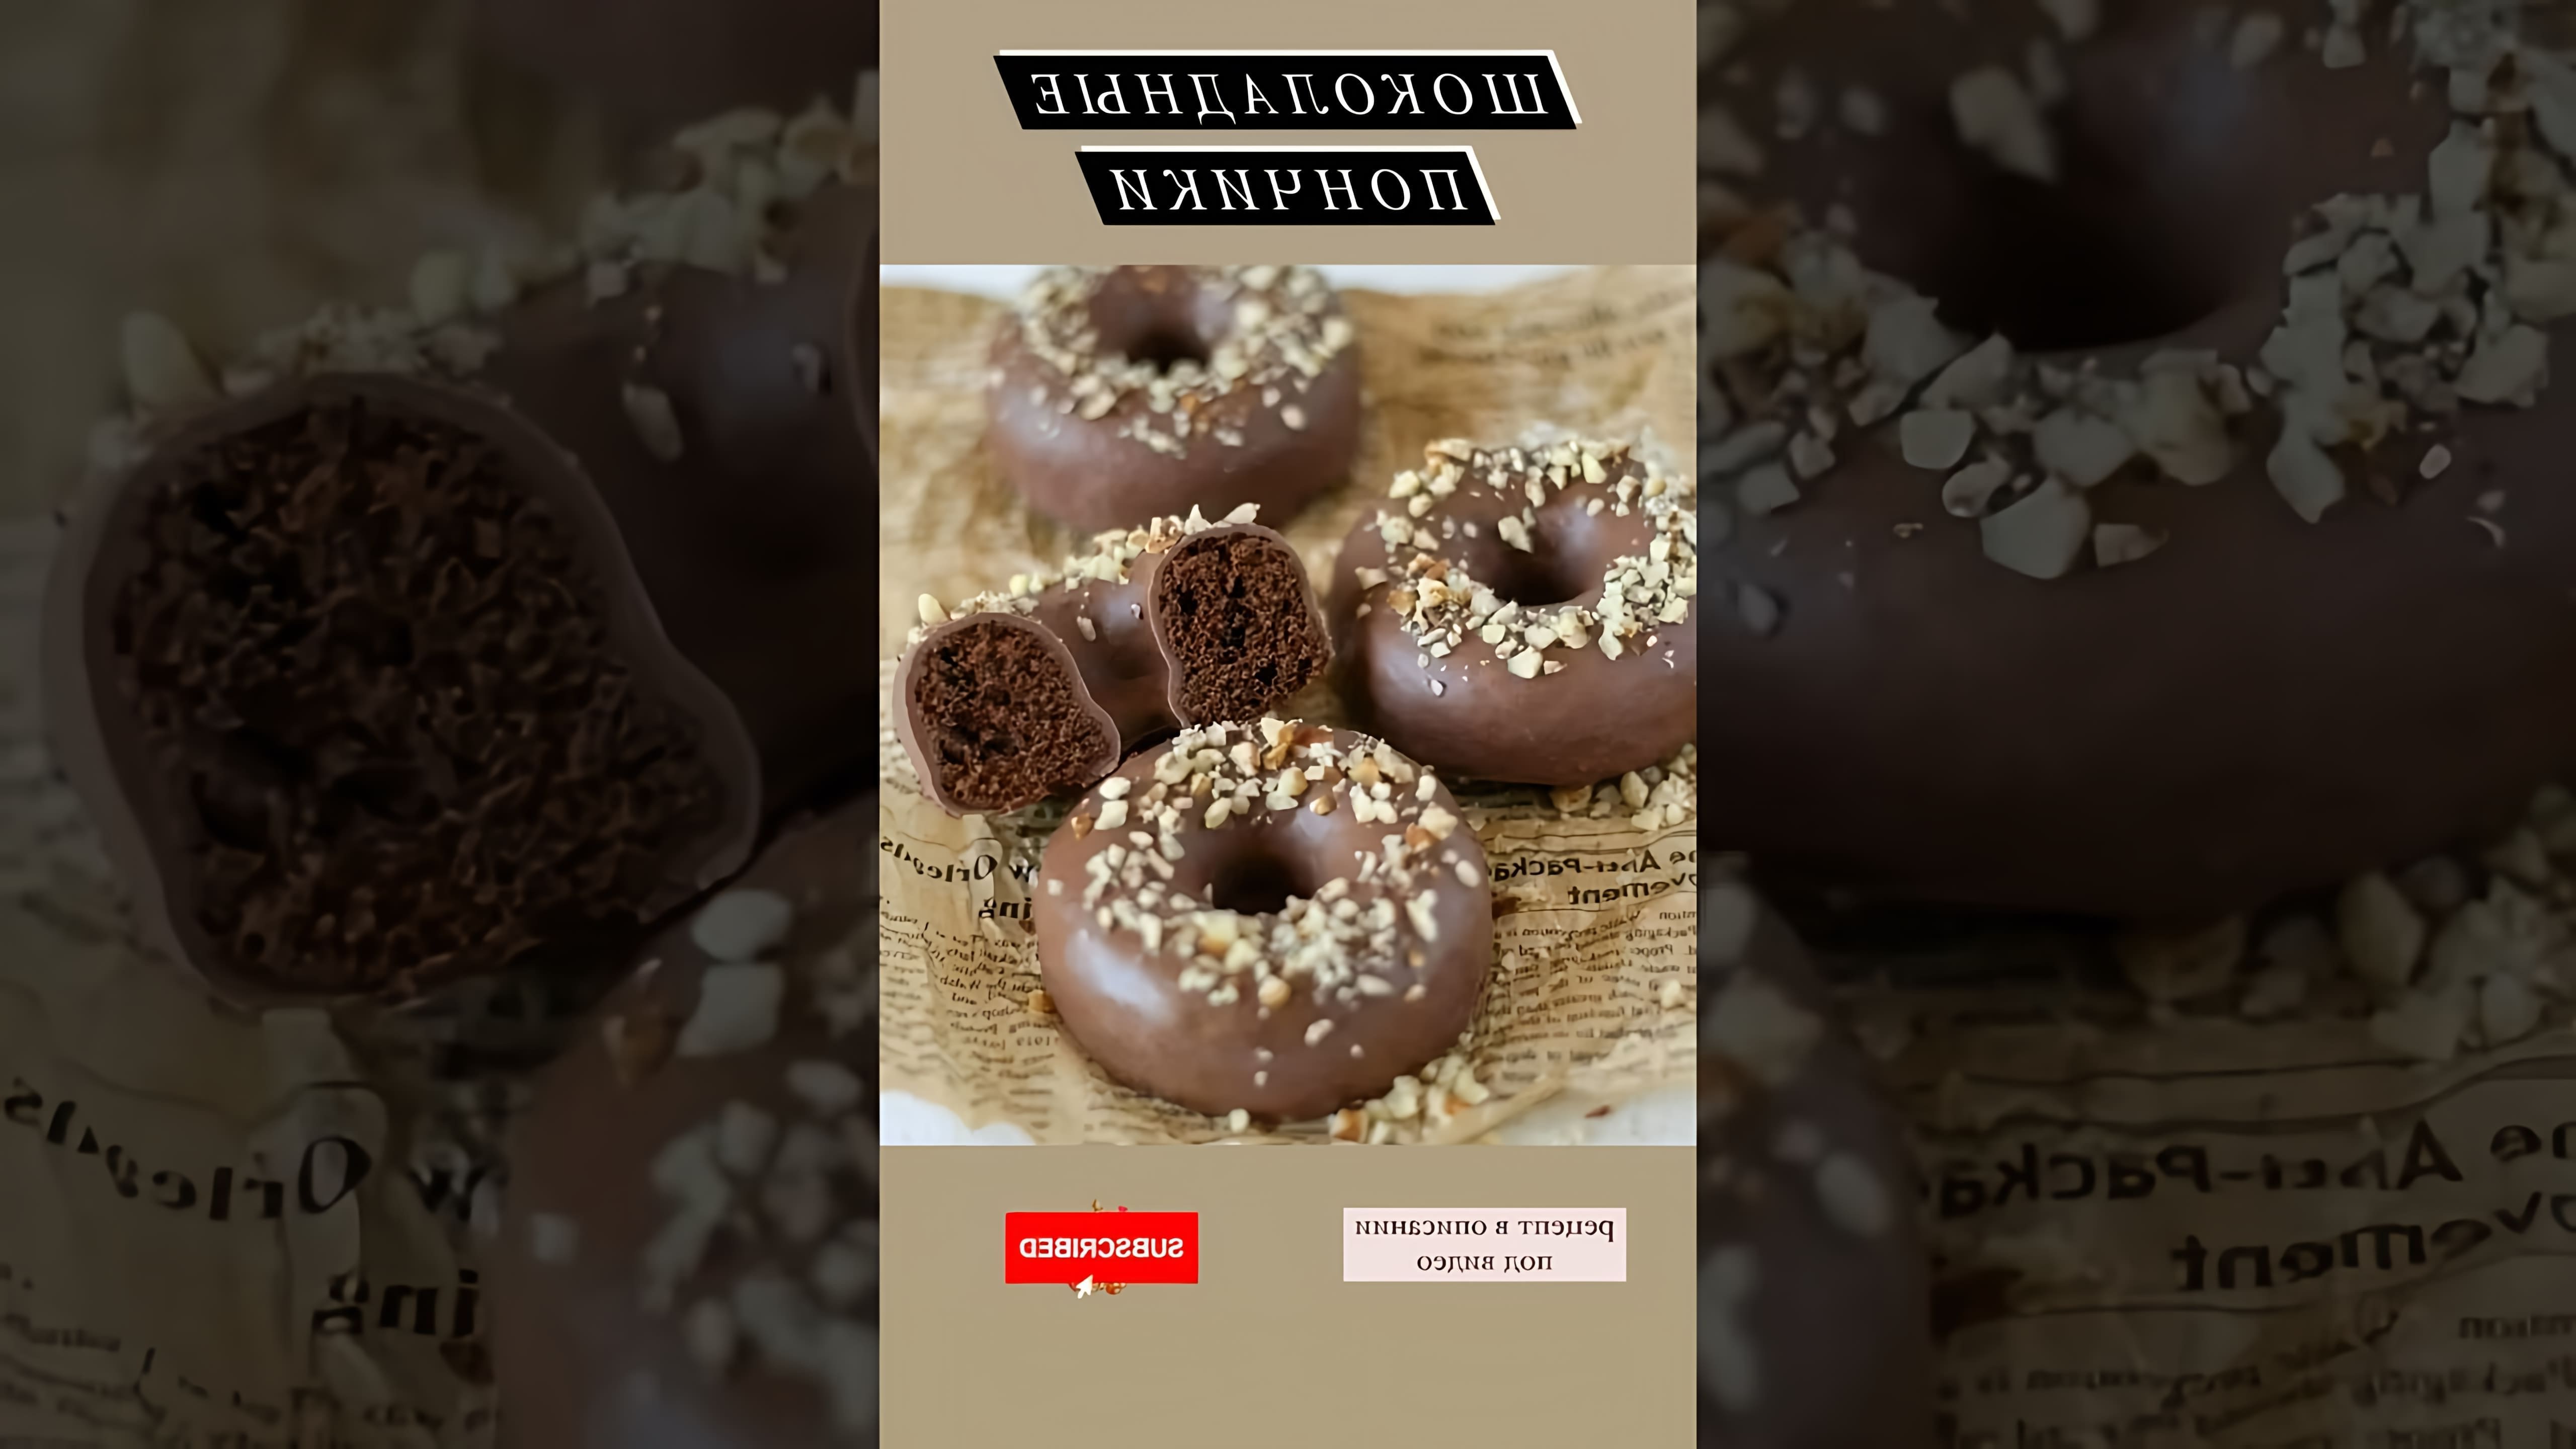 Рецепт шоколадных пончиков 🍩 - это видео-ролик, который показывает, как приготовить вкусные и ароматные шоколадные пончики